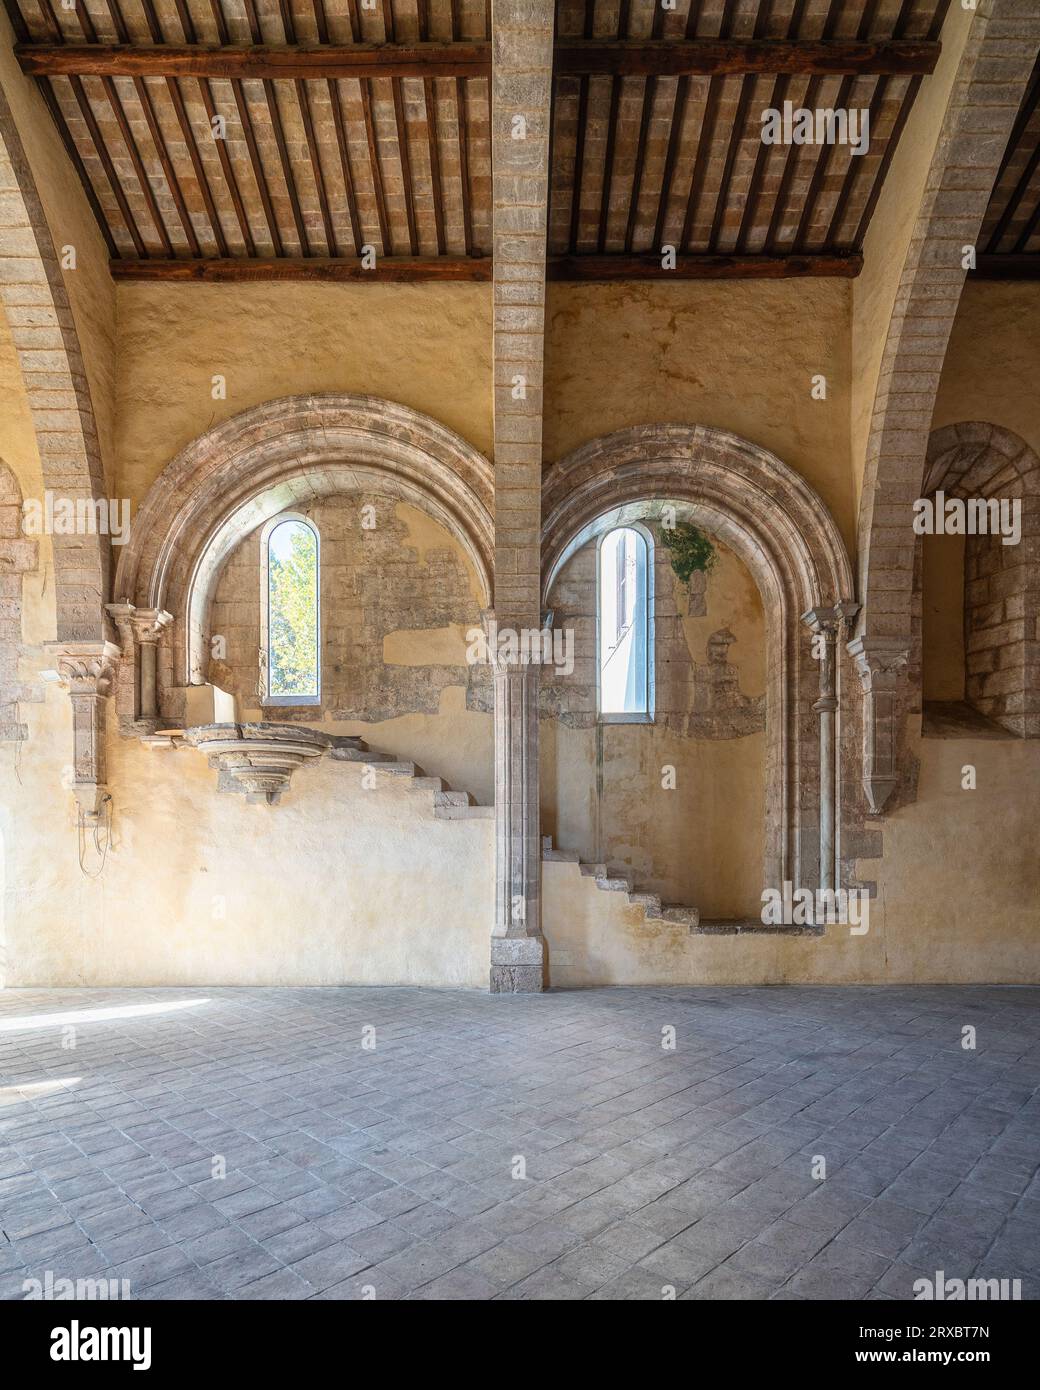 La merveilleuse abbaye de Fossanova près de la ville de Priverno, dans la province de Latina, Latium, italie. Banque D'Images